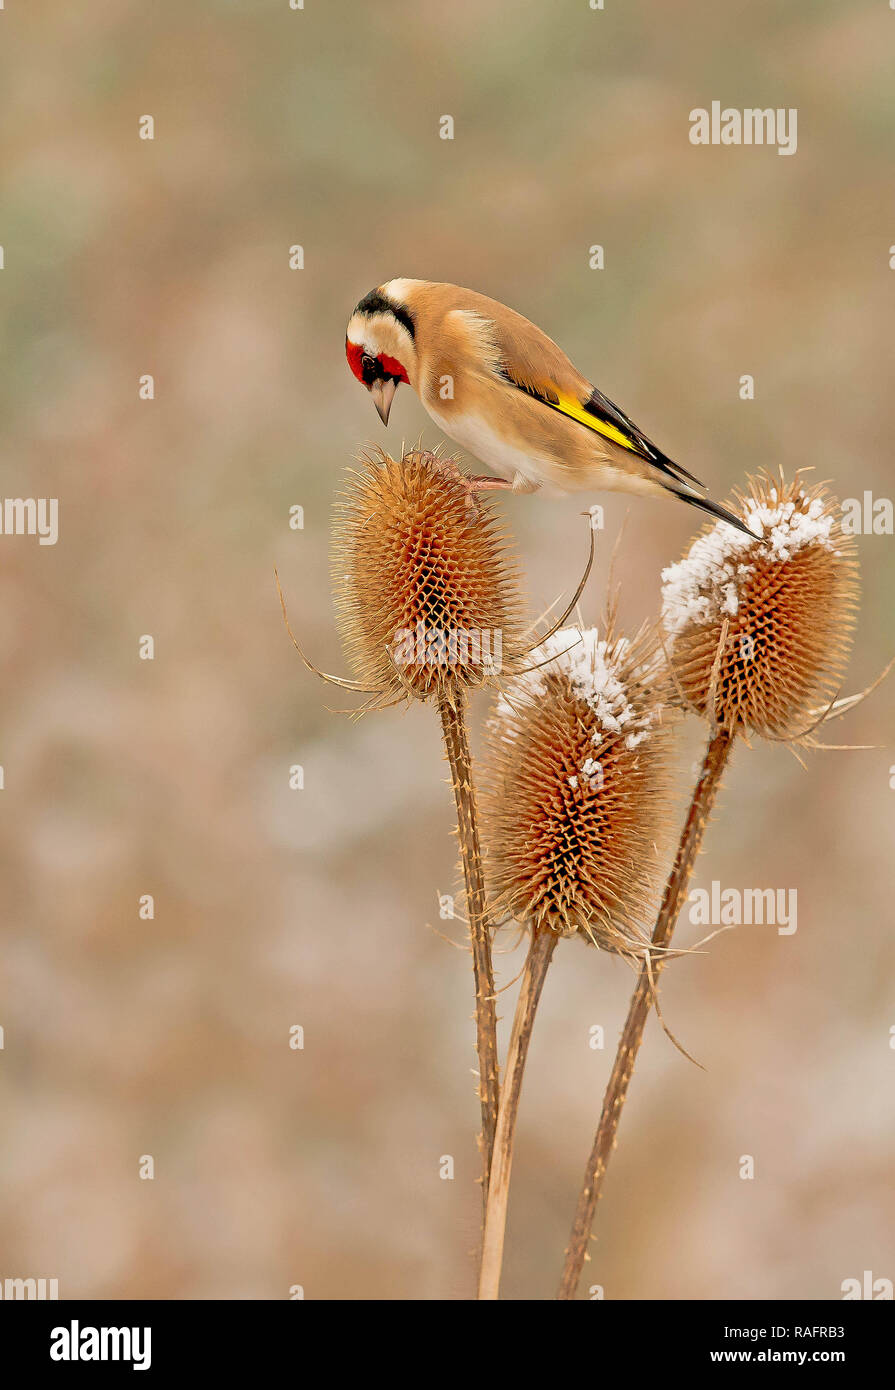 Eine akrobatische Goldfinch Vogel aufgezeichnet wurde Durchführung des Splits, während sie versucht, zwischen zwei karde Pflanzen im Gleichgewicht zu halten. Die amüsante Bilder zeigen die Gehen Stockfoto